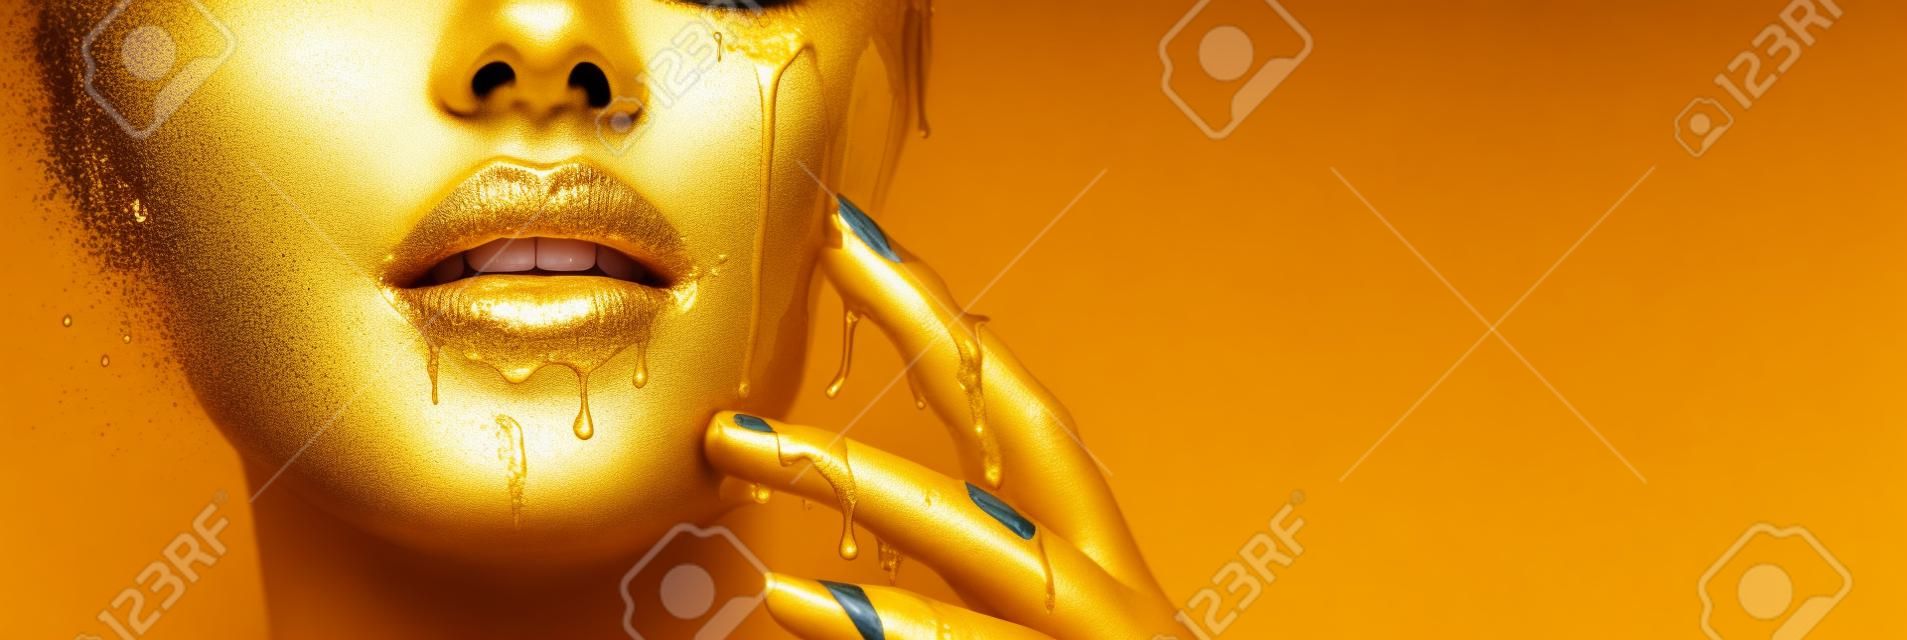 Złota farba rozmazuje się z ust i dłoni, złoty płyn spada na usta pięknej modelki, kreatywny abstrakcyjny makijaż. Piękna twarz kobiety